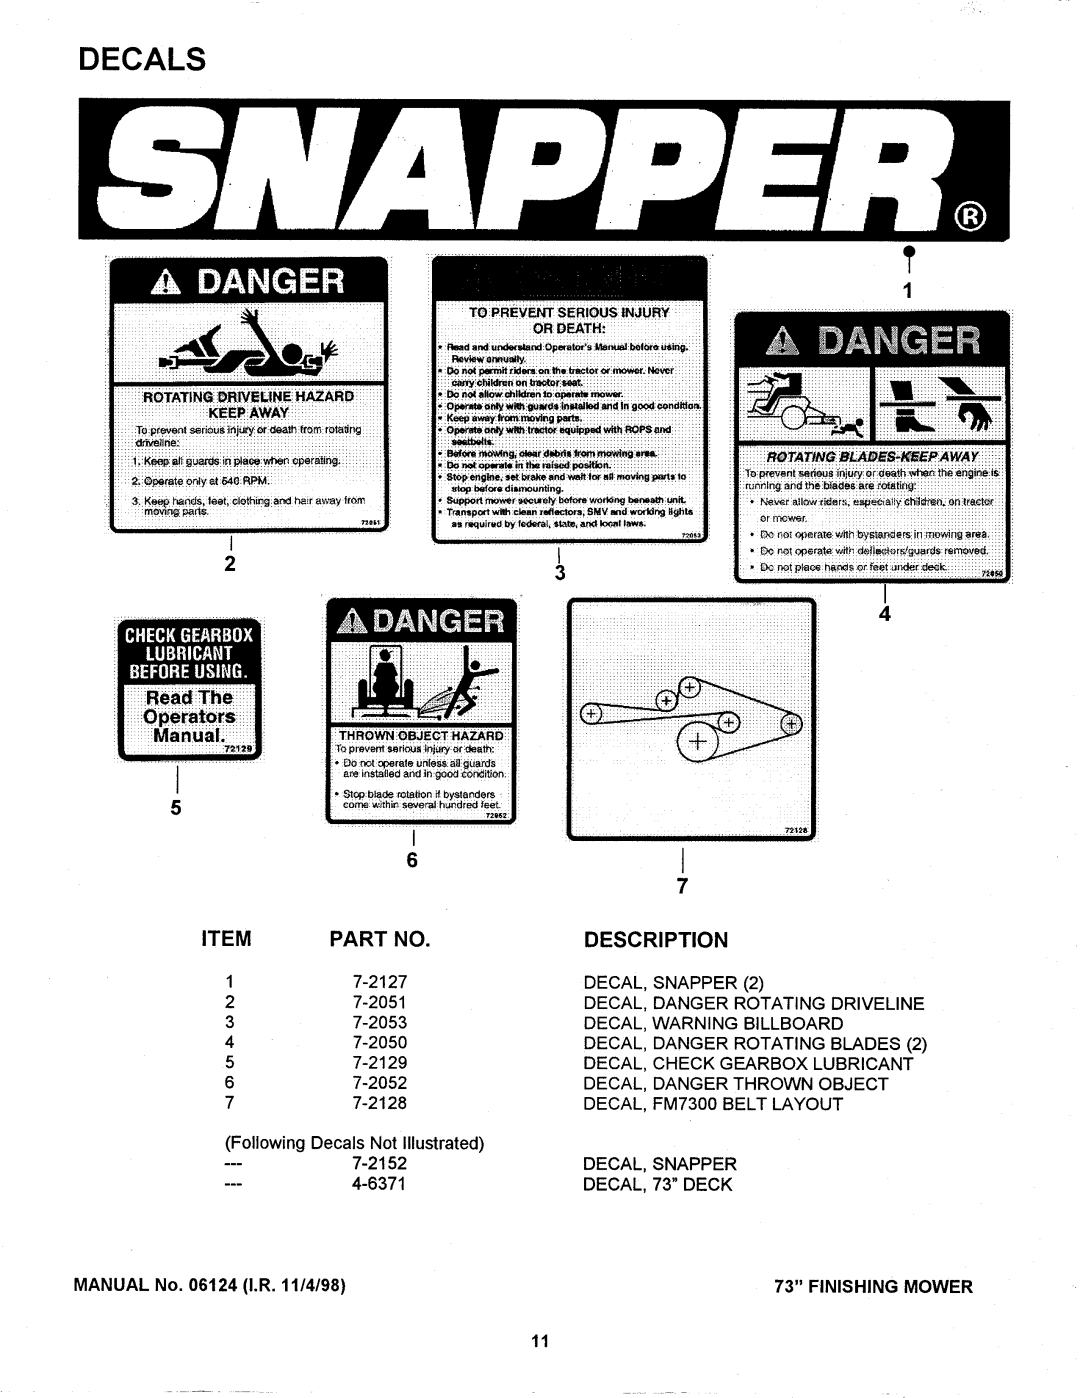 Snapper 06124 manual 